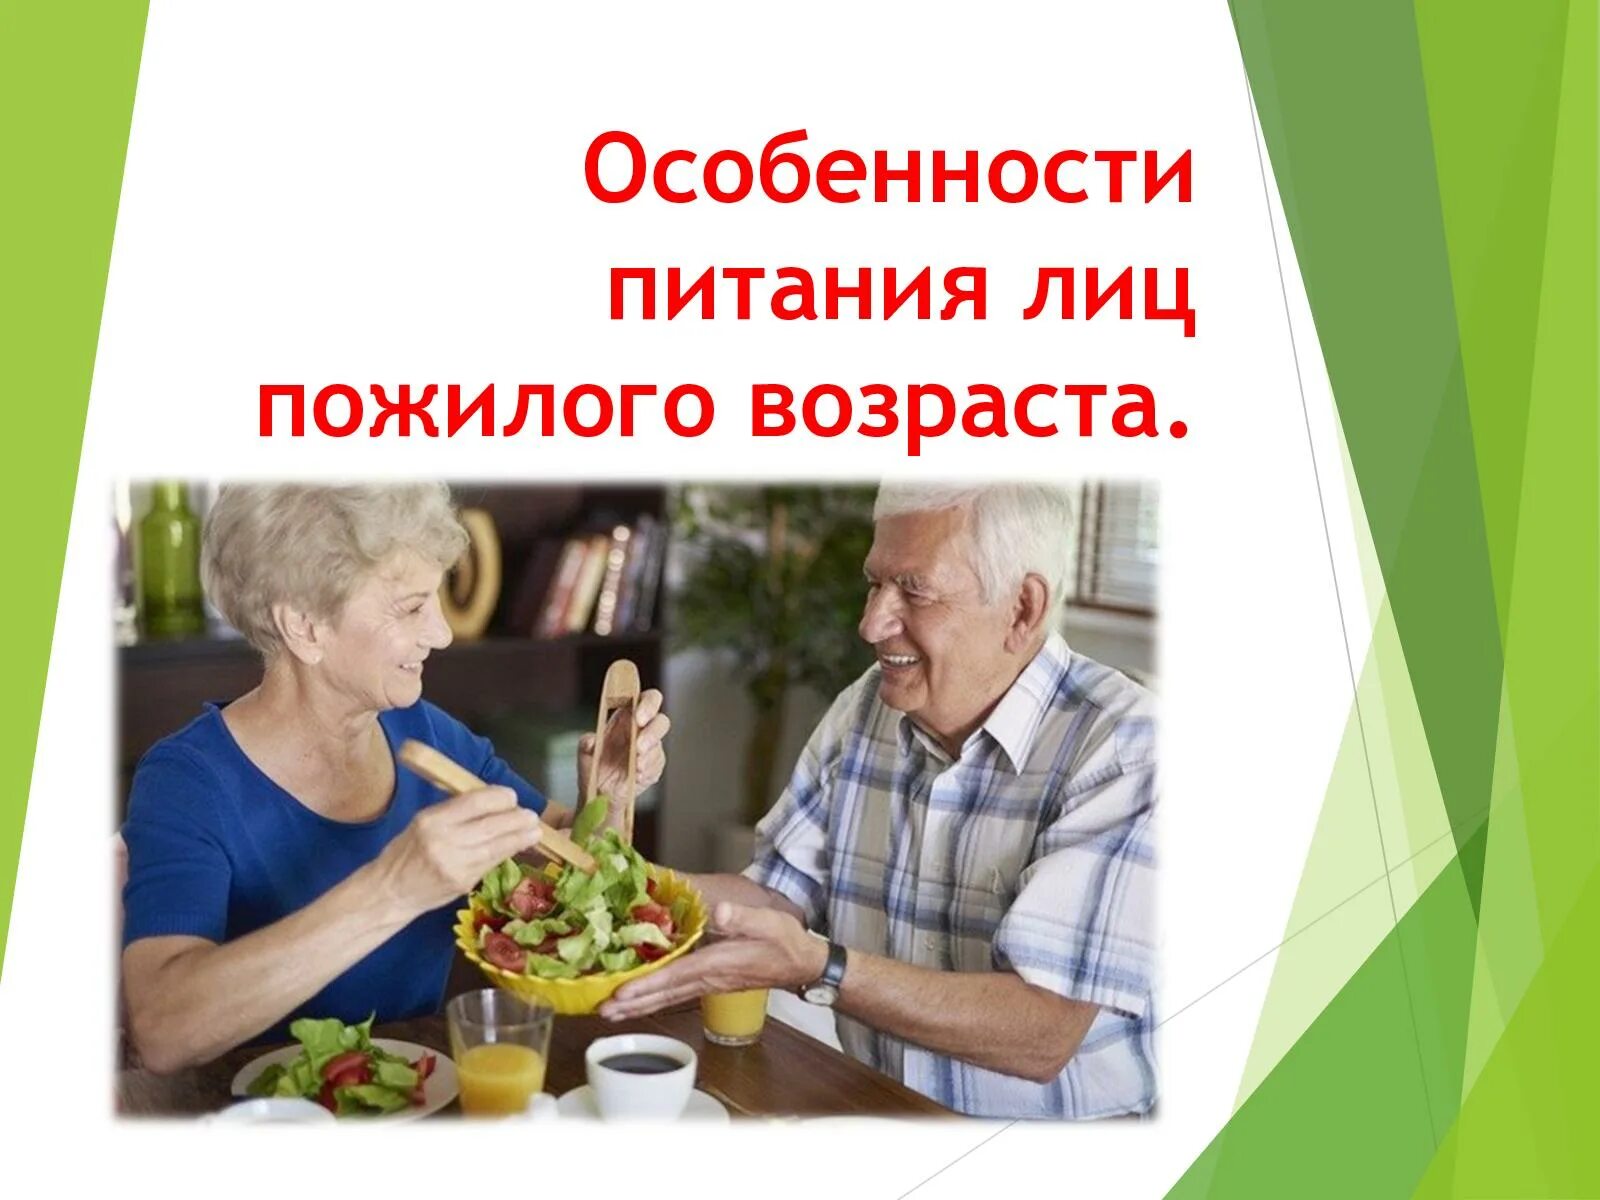 Питание лиц пожилого возраста. Особенности питания лиц пожилого возраста. Рациональное питание лиц пожилого и старческого возраста. Рекомендации по питанию лиц пожилого и старческого возраста.